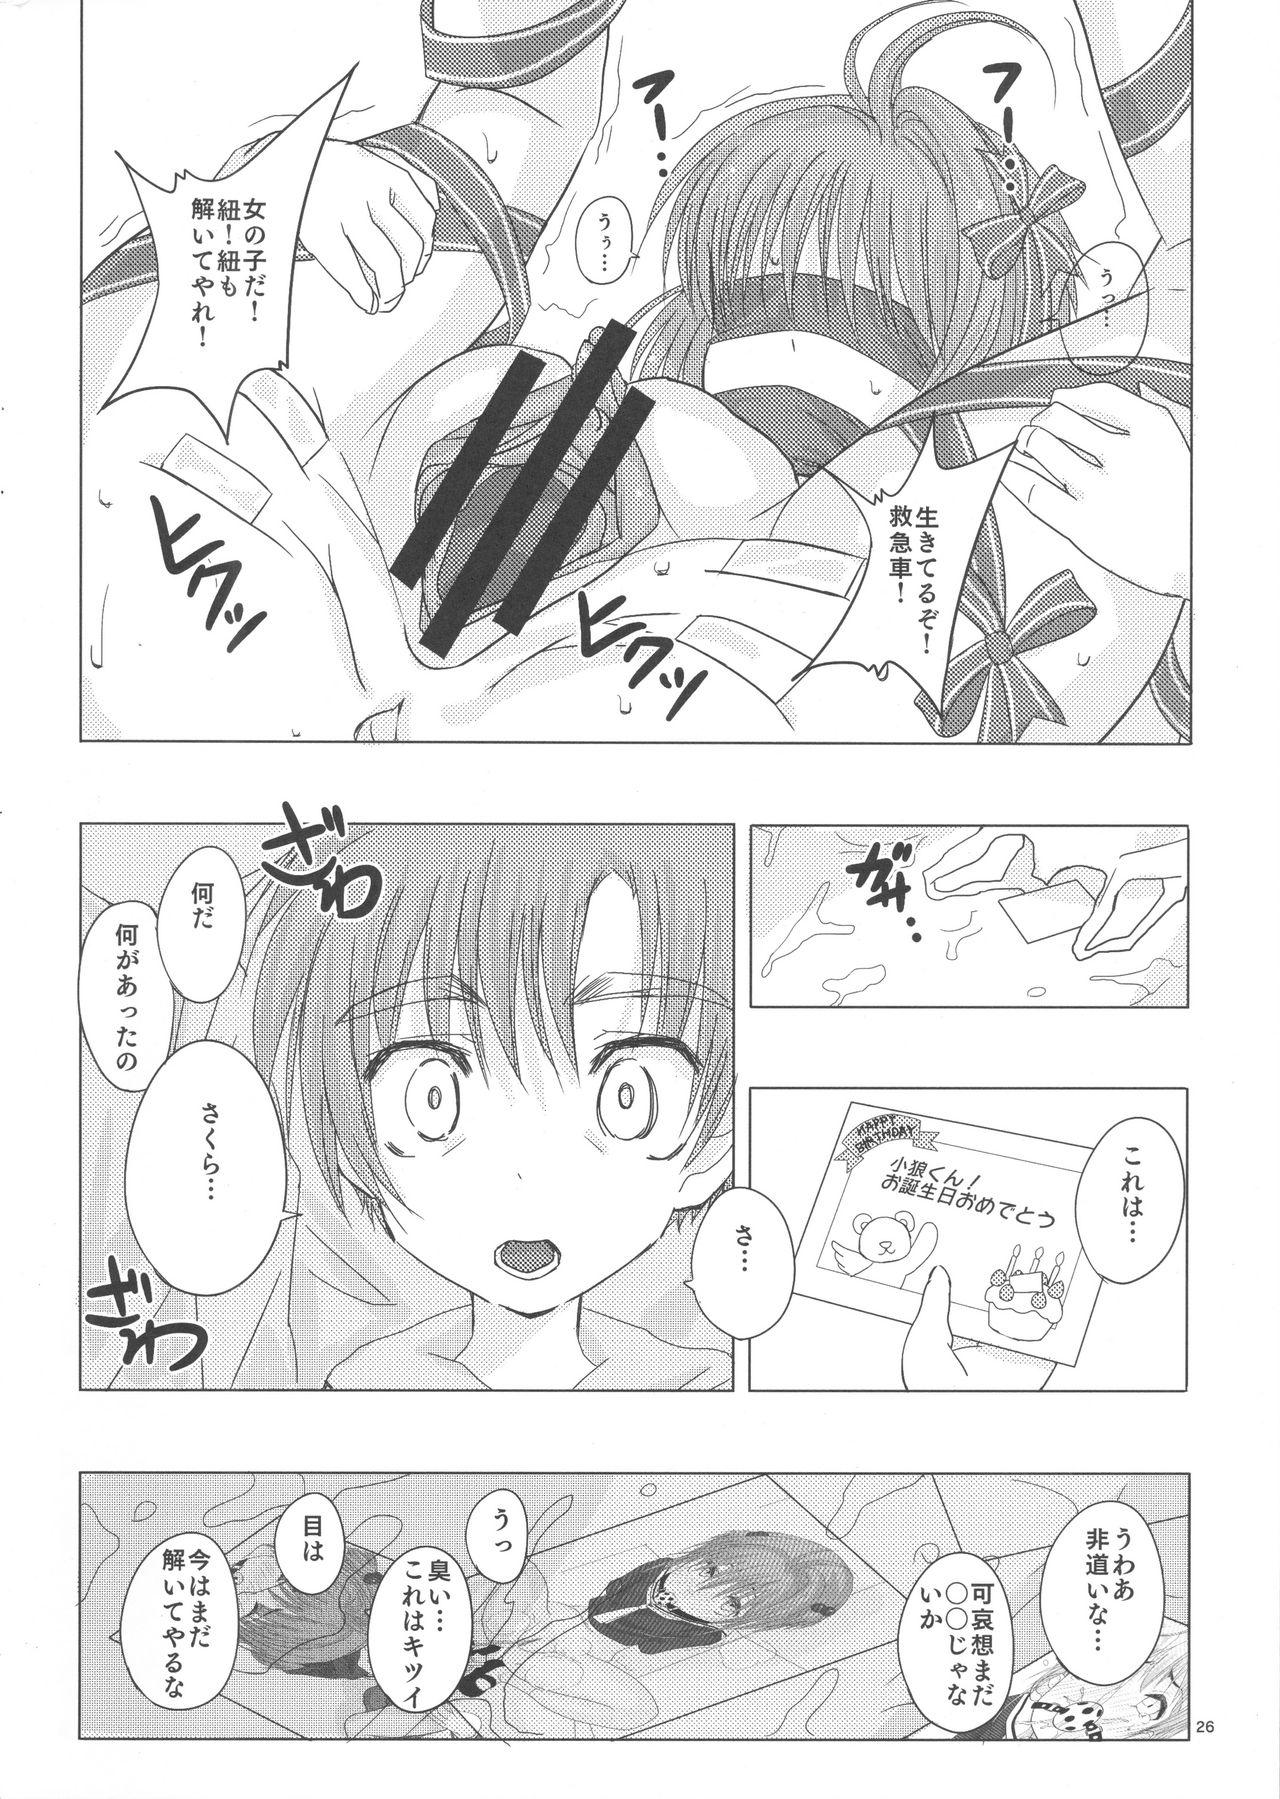 Novia SAKURA BREAK3 - Cardcaptor sakura Nurumassage - Page 5